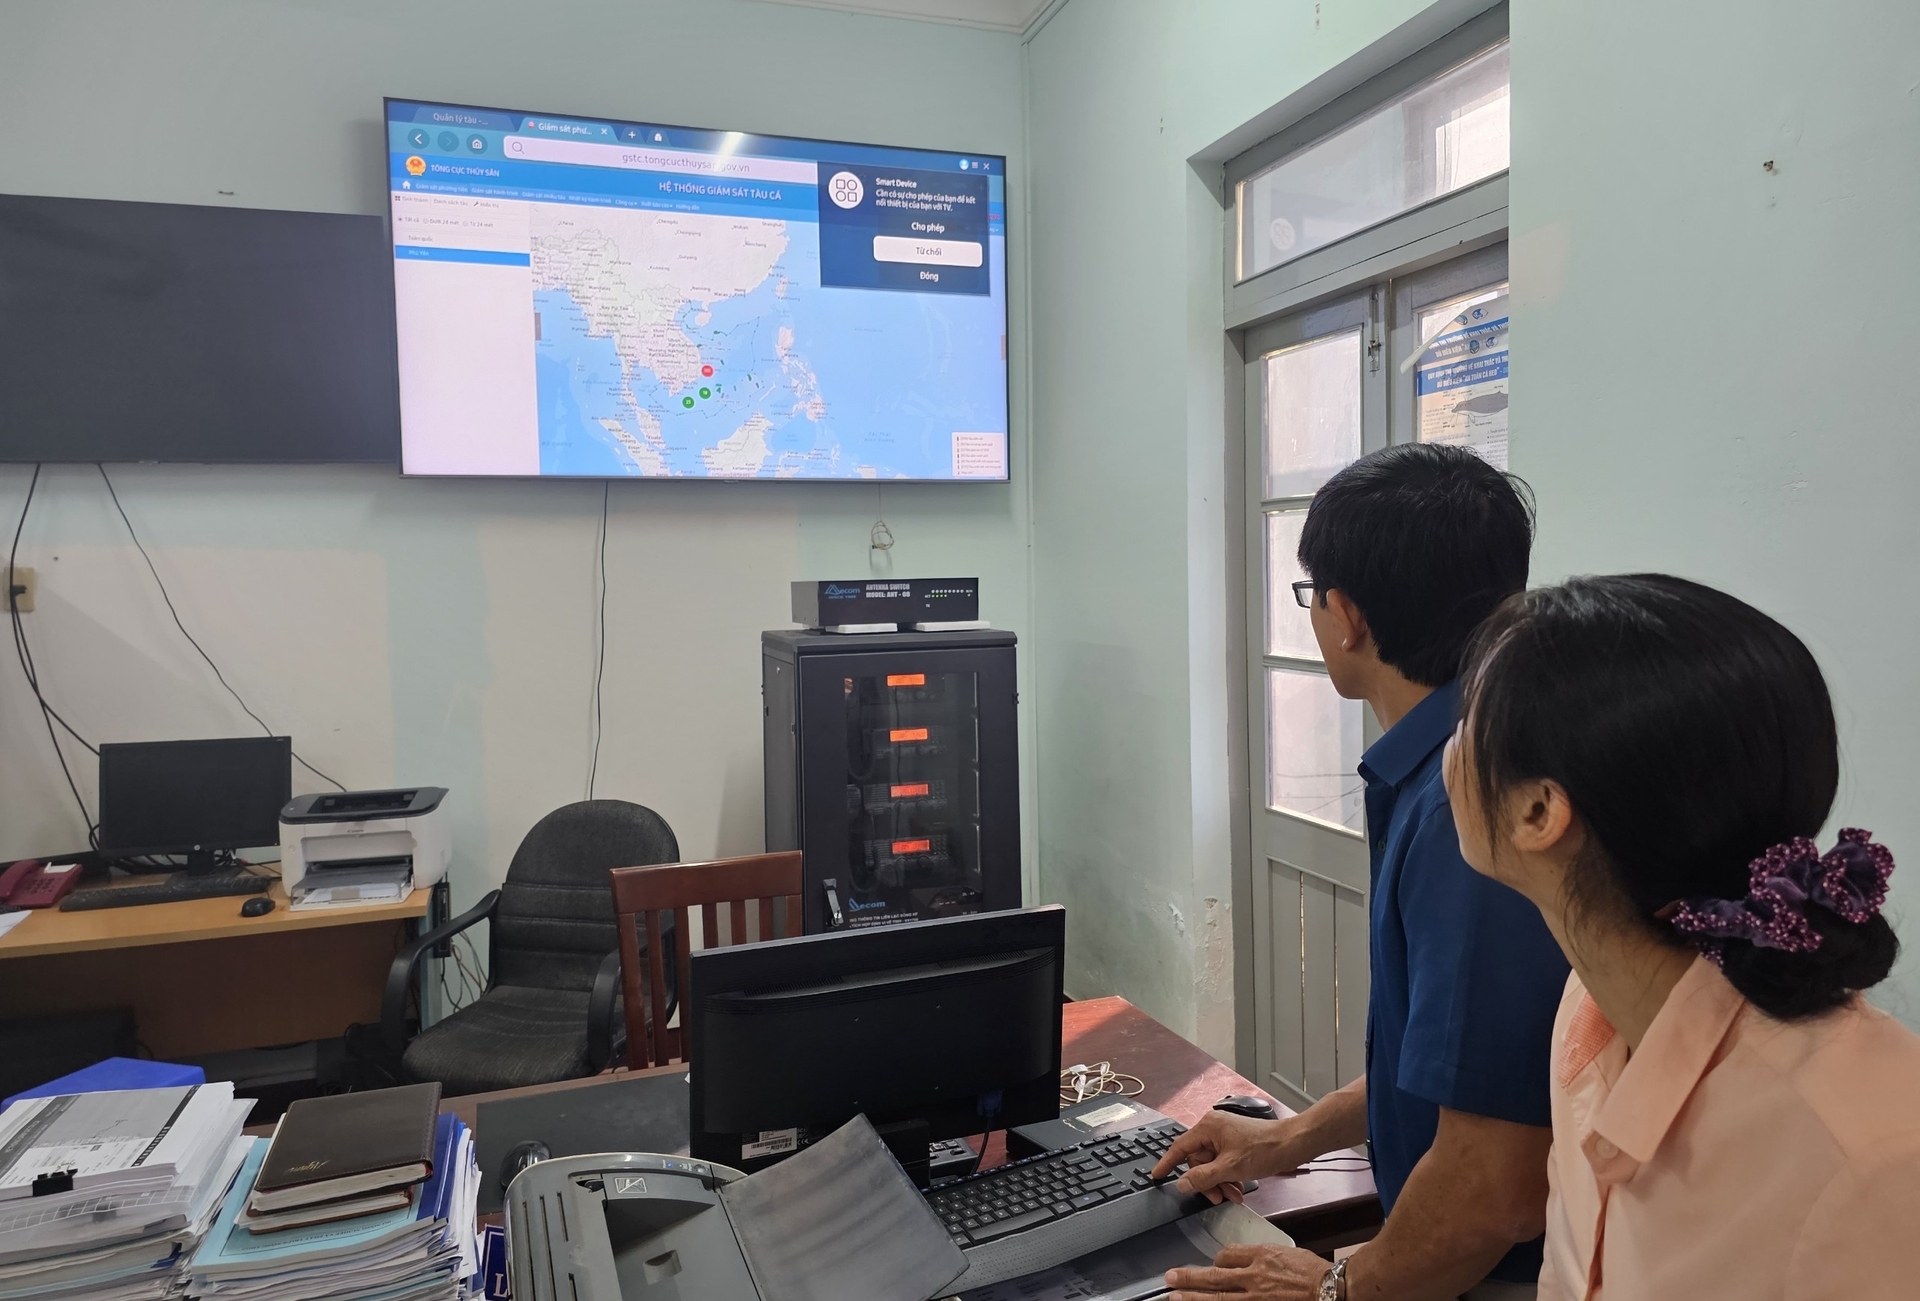 Lực lượng chức năng ở Phú Yên giám sát chặt chẽ đội tàu khai thác trên biển thông qua hệ thống giám sát tàu cá đặt tại Chi cục Thủy sản. Ảnh: KS.